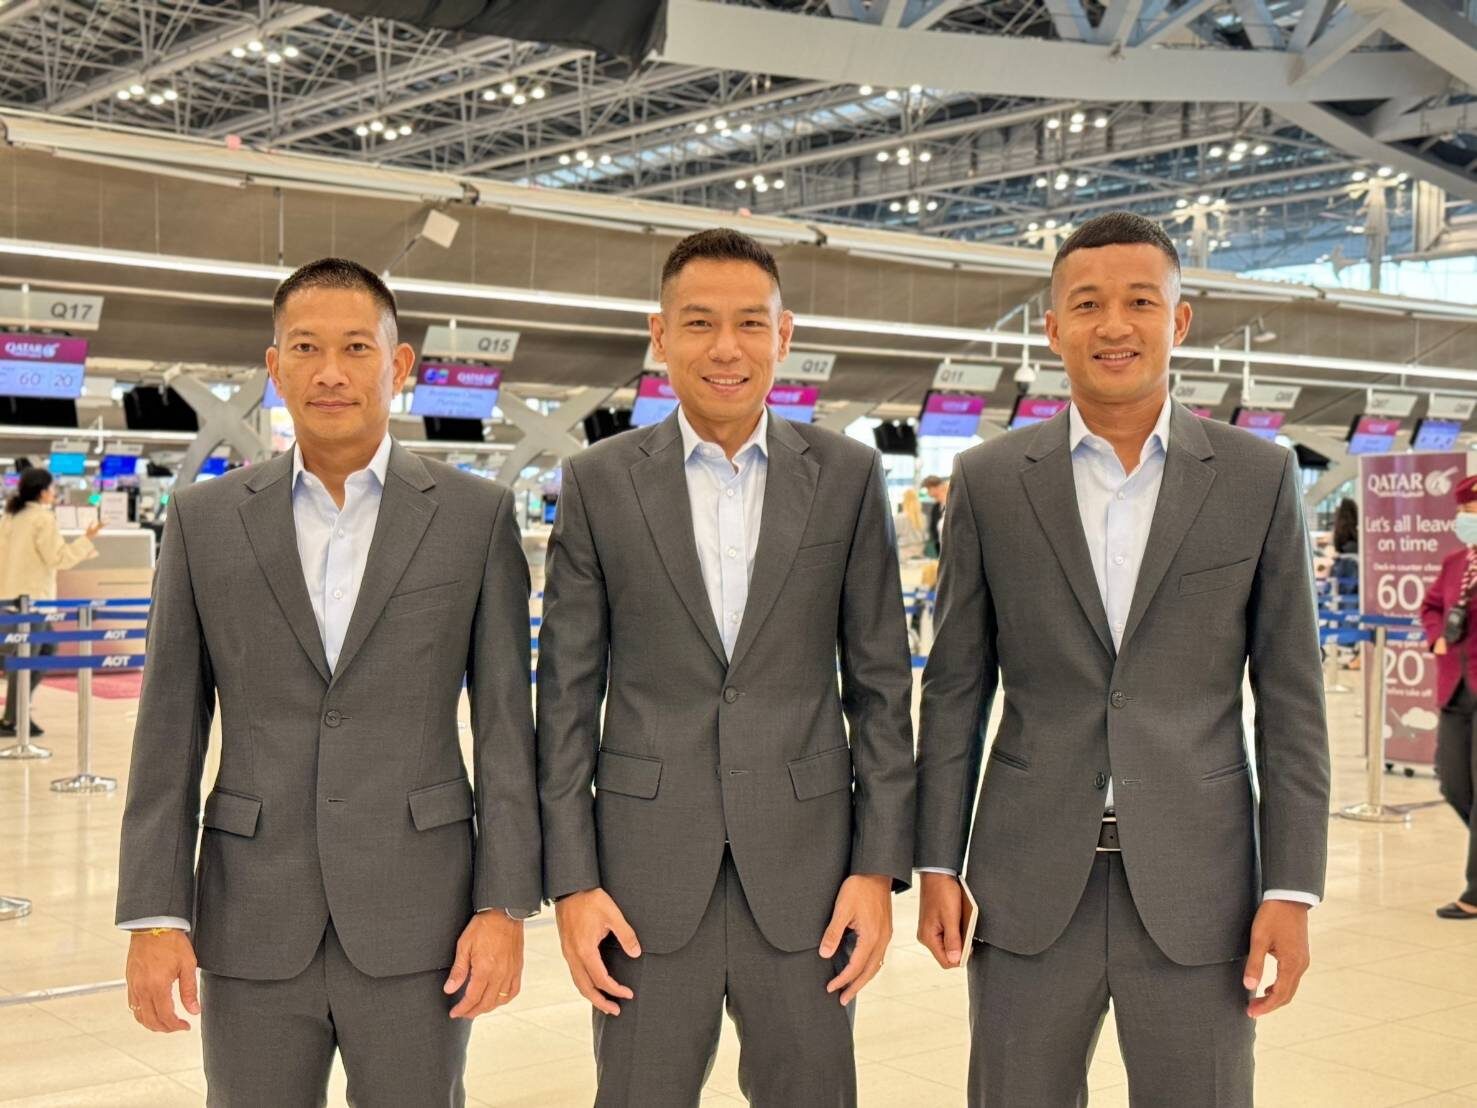 ‘มาดามแป้ง’ สนับสนุนส่ง 6 ผู้ตัดสินไทย ระดับฟีฟ่า อีลิต ทำหน้าที่เกมฟุตบอลโลก รอบคัดเลือก